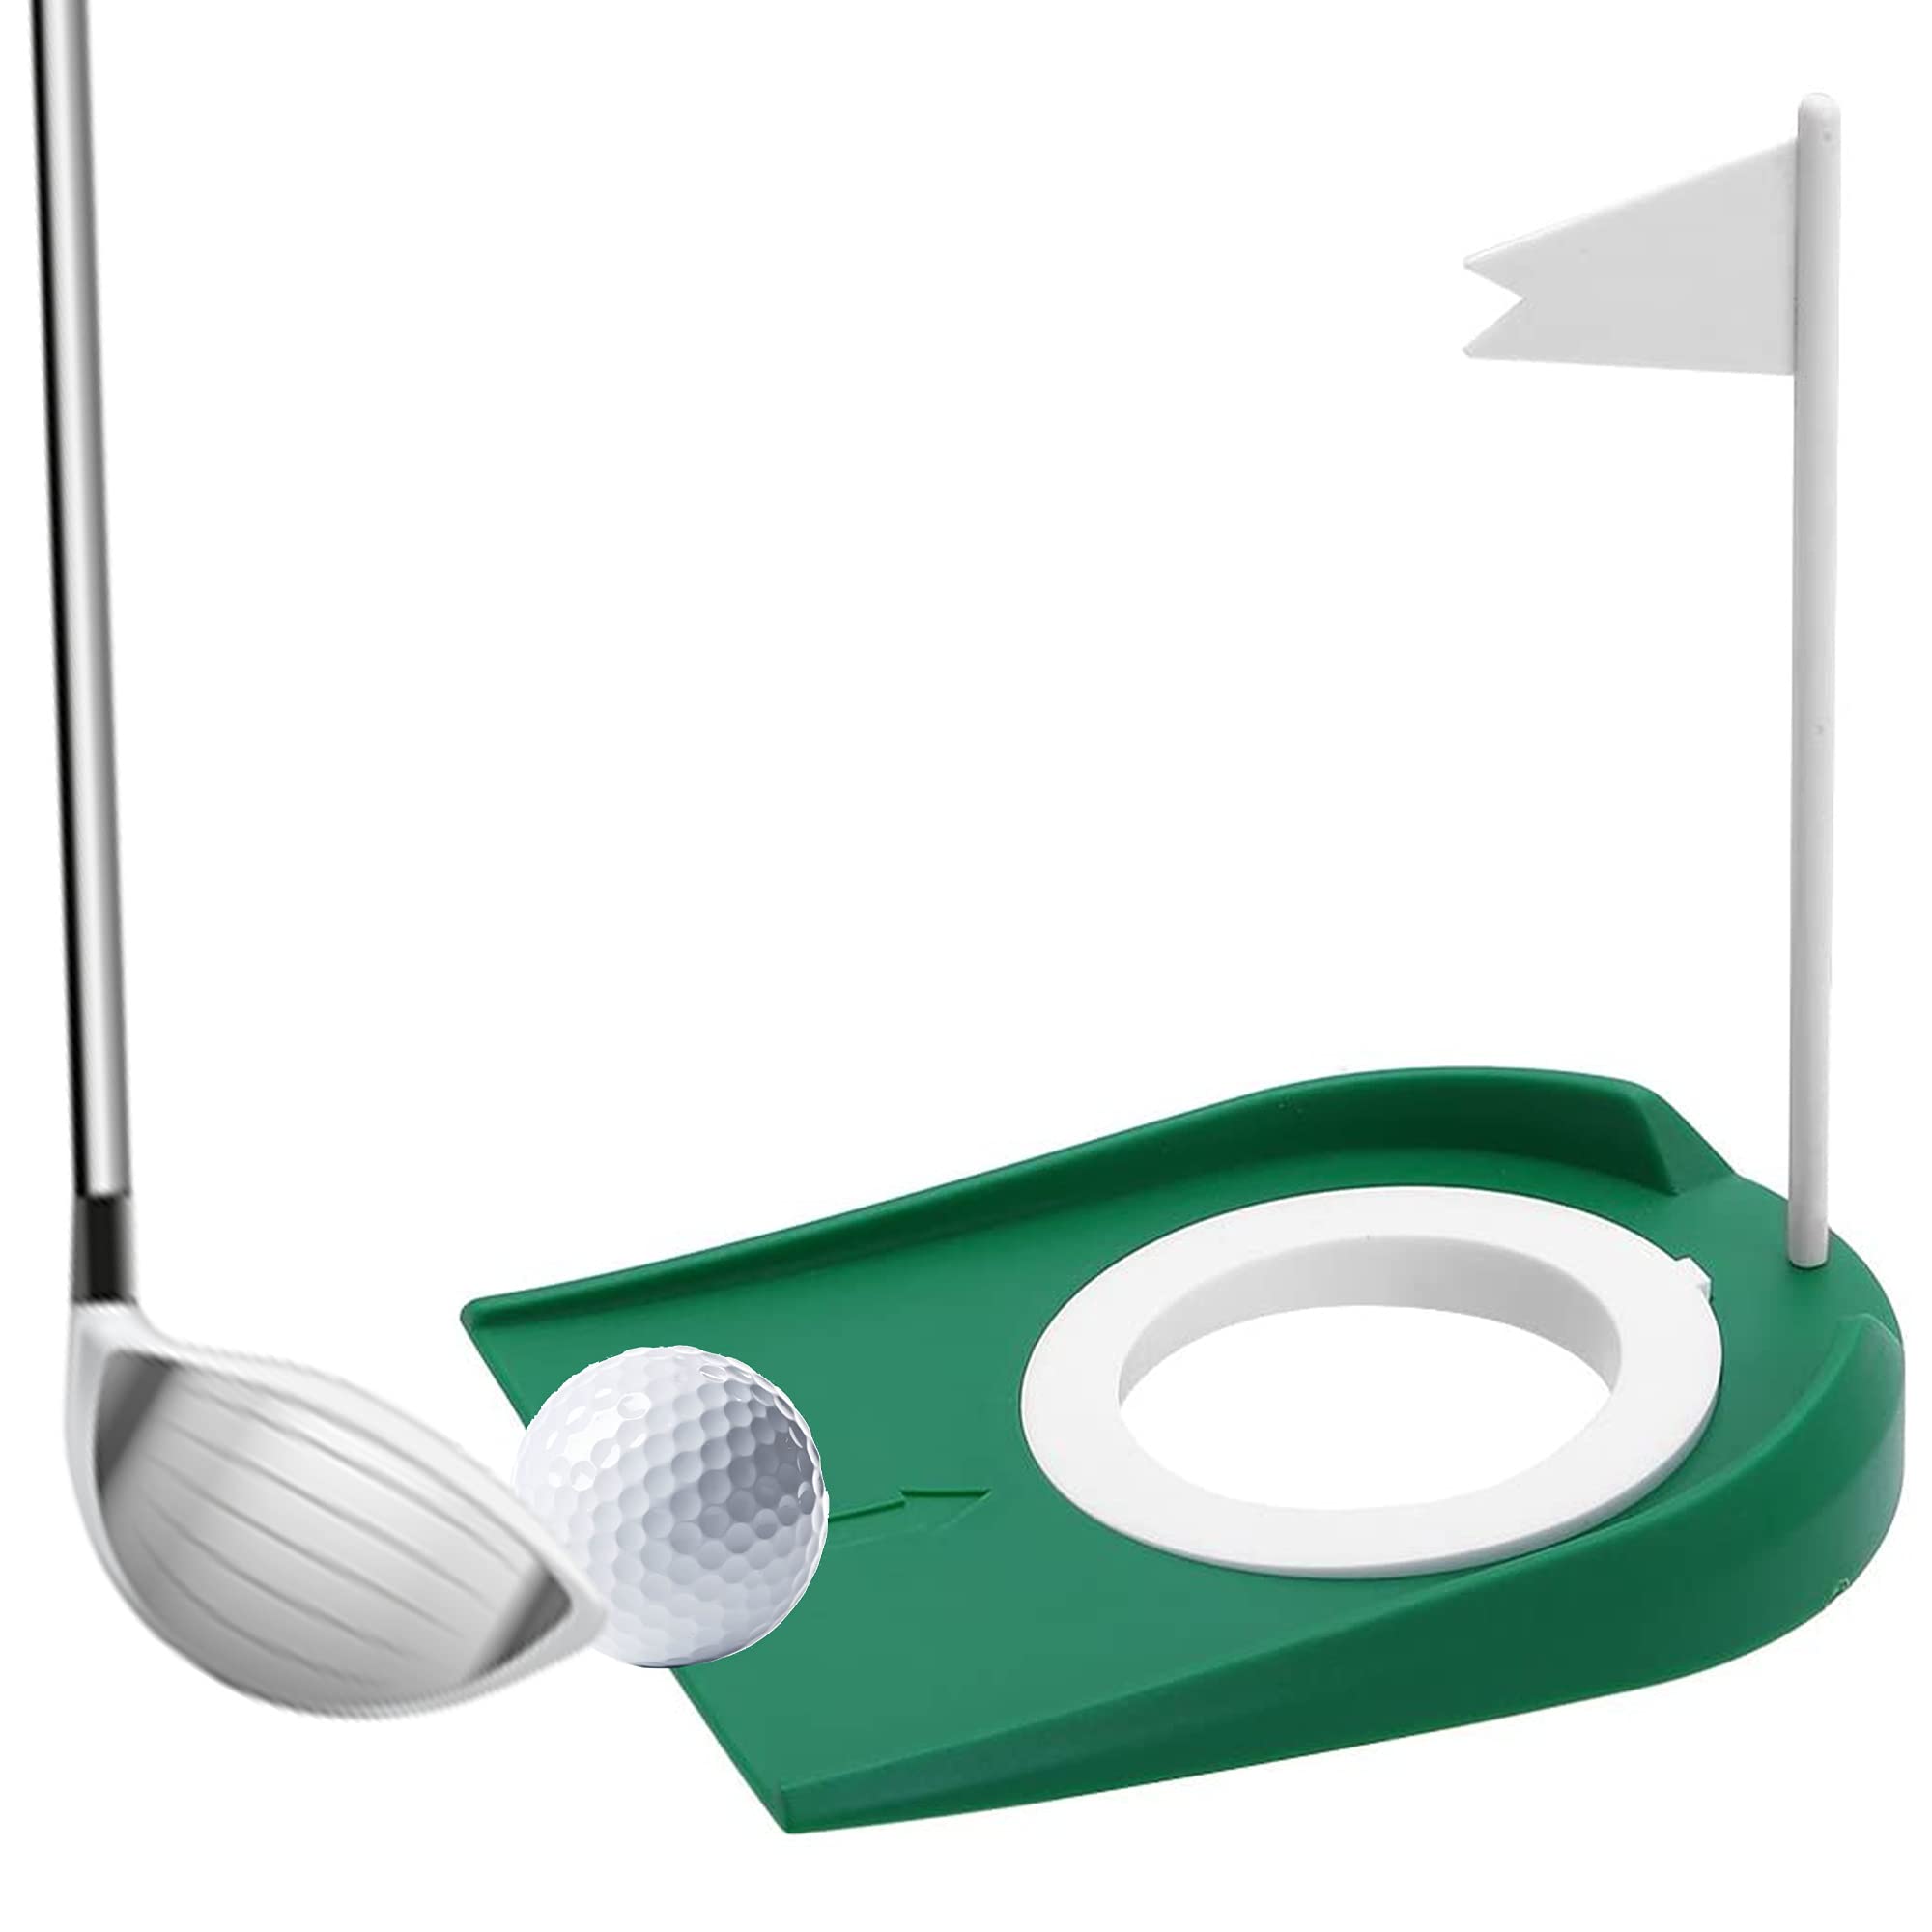 Kigniote Golf-Übungs-Putter-Pad, Golf Putting Cup aus Kunststoff für Drinnen und Draußen Übungshilfen mit Verstellbarem Hole und Flagge